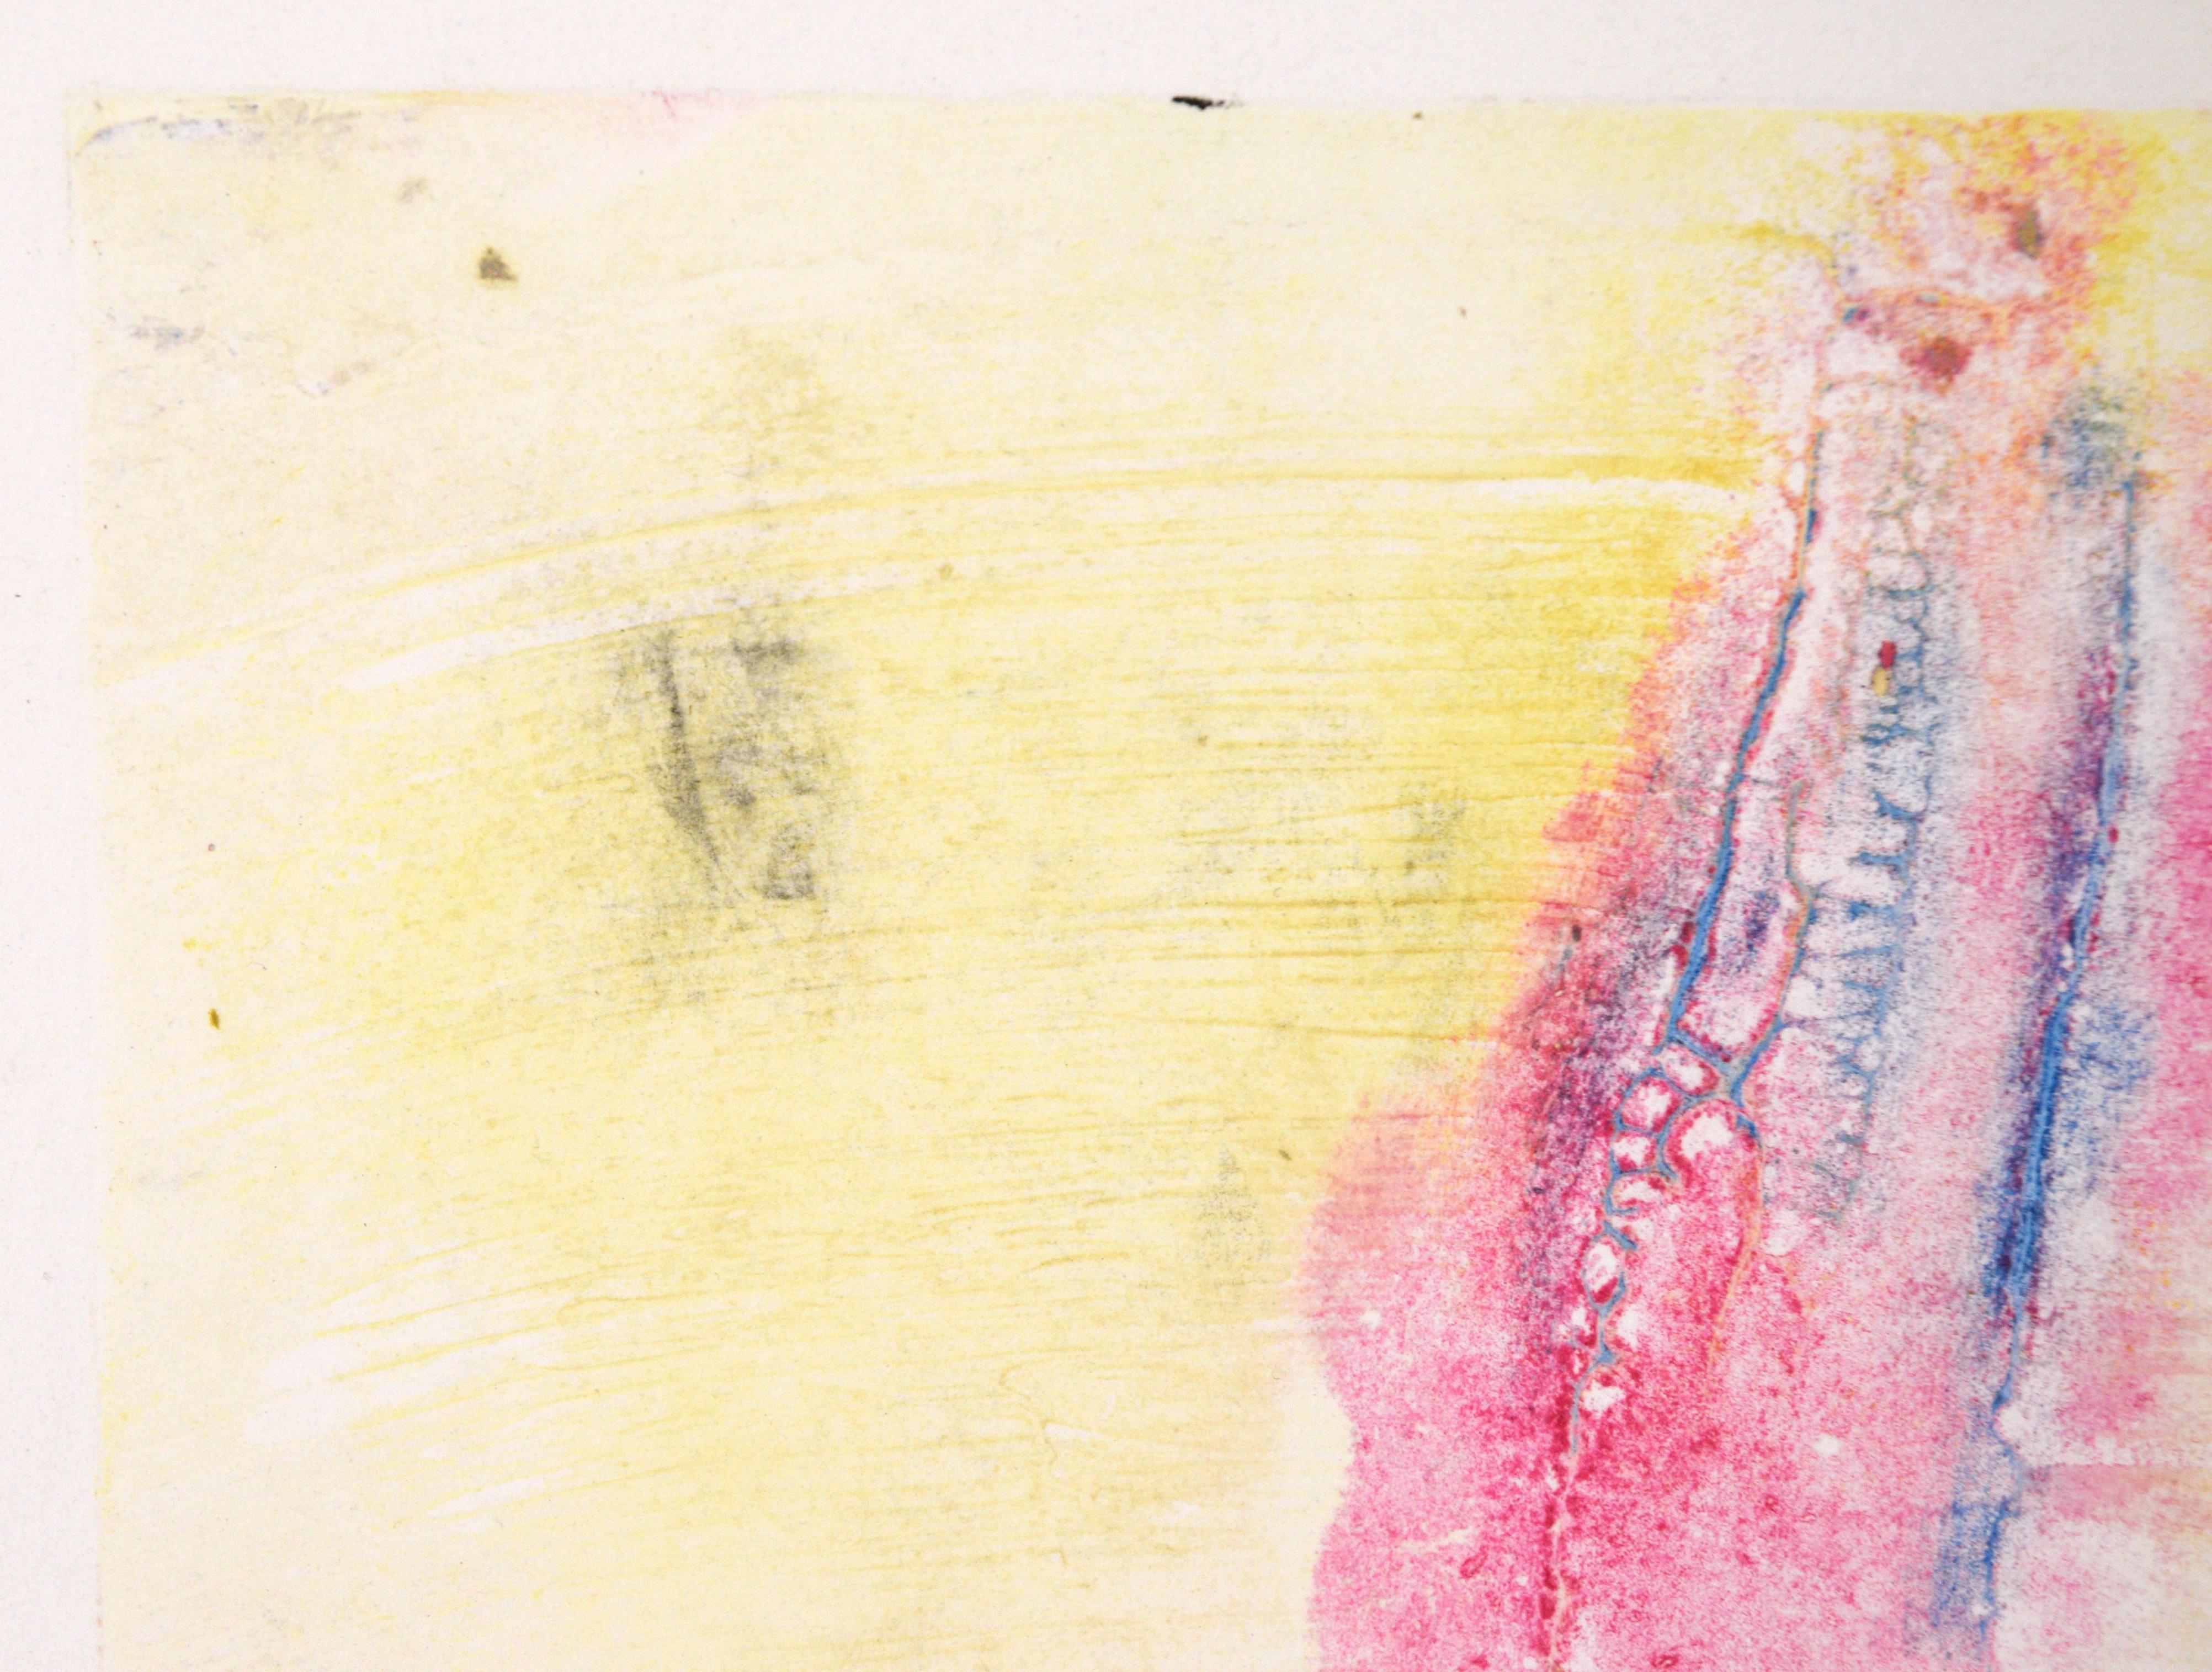 Blau und Rosa auf Gelb - Texturierte Transfermonotypie in Öl auf Papier (Abstrakter Expressionismus), Print, von Heather Speck